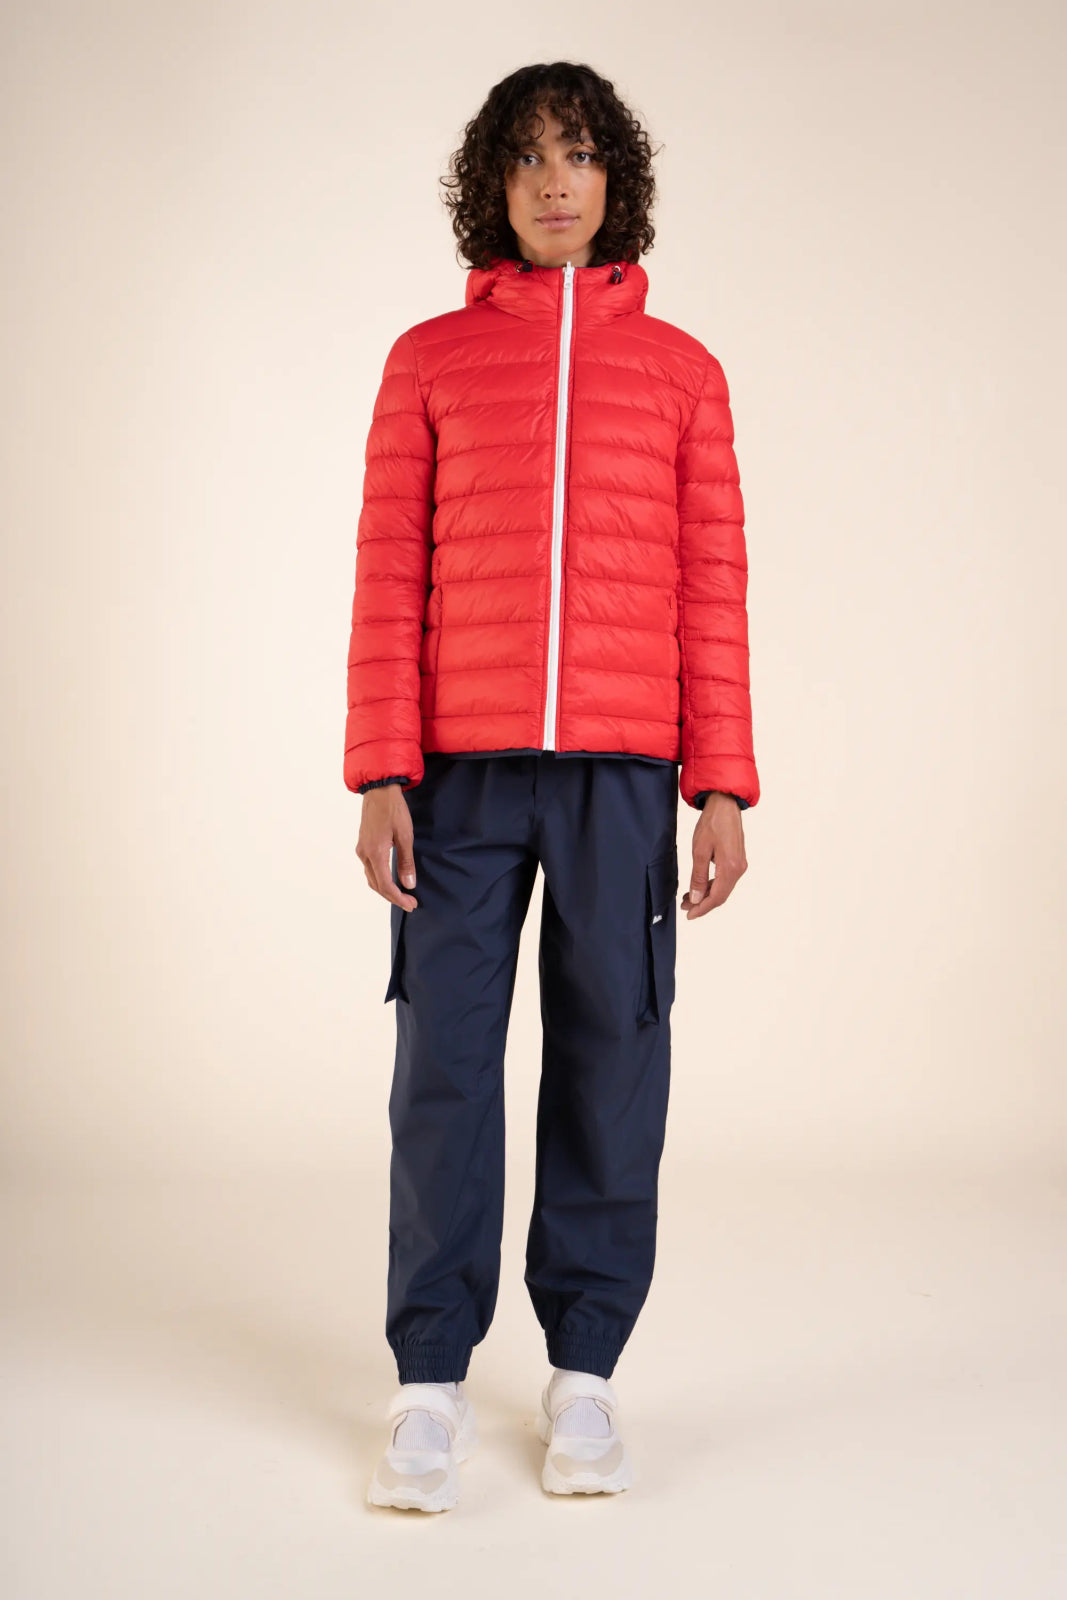 Charonne - Reversible down jacket - Flotte #couleur_indigo-rouge